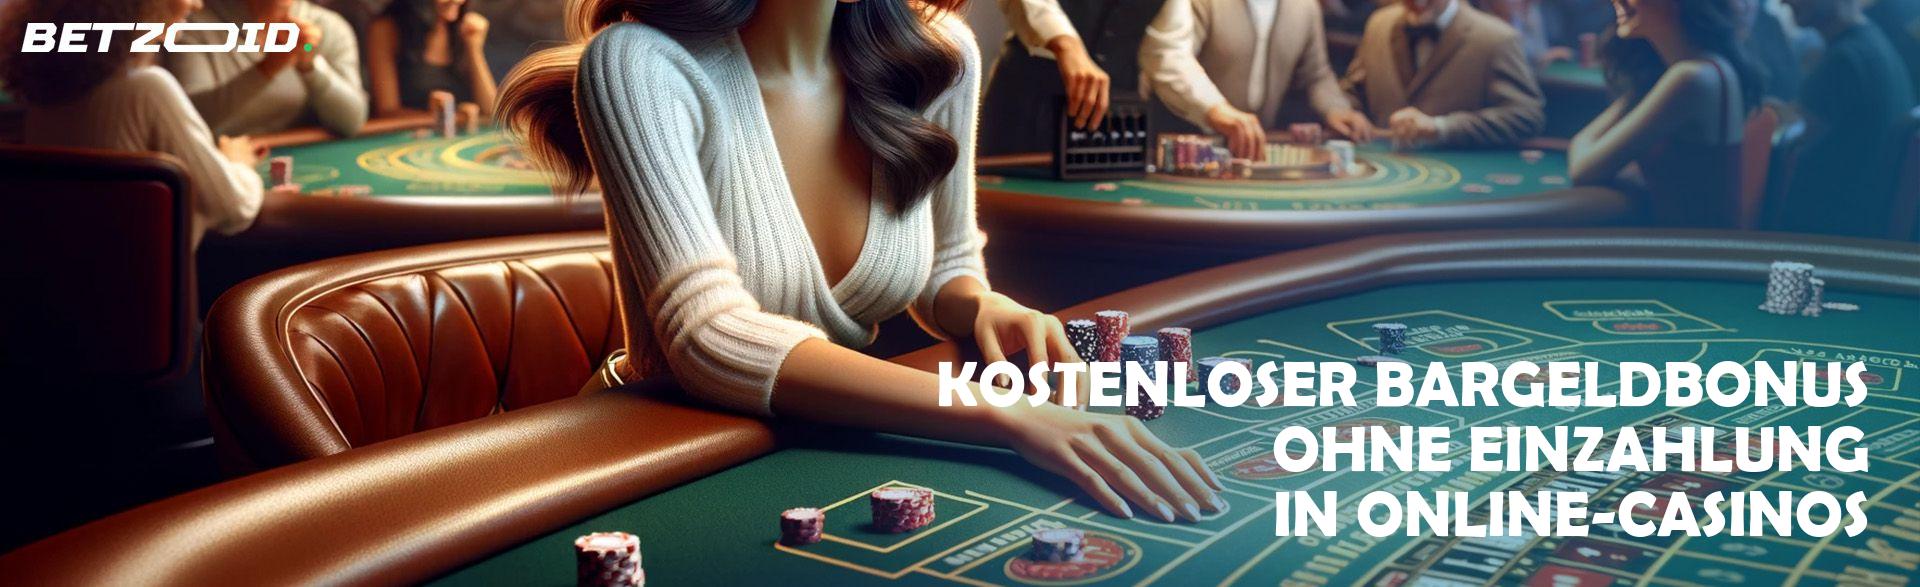 Kostenloser Bargeldbonus ohne Einzahlung in Online-Casinos.